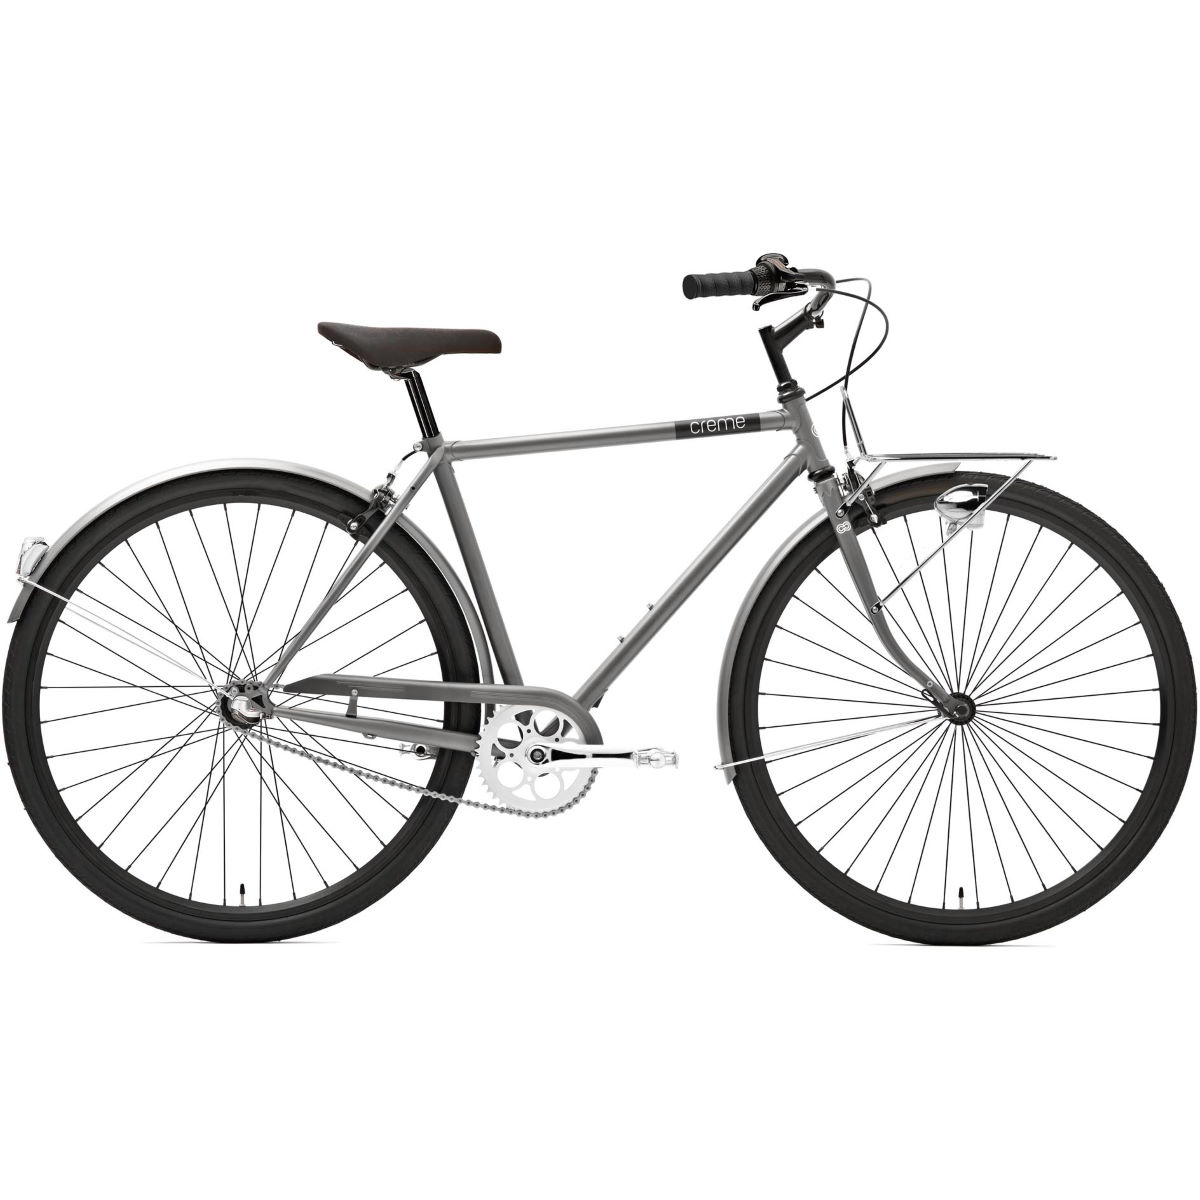 Bicicleta urbana Creme Caferacer Man Solo (2020) - Bicicletas híbridas